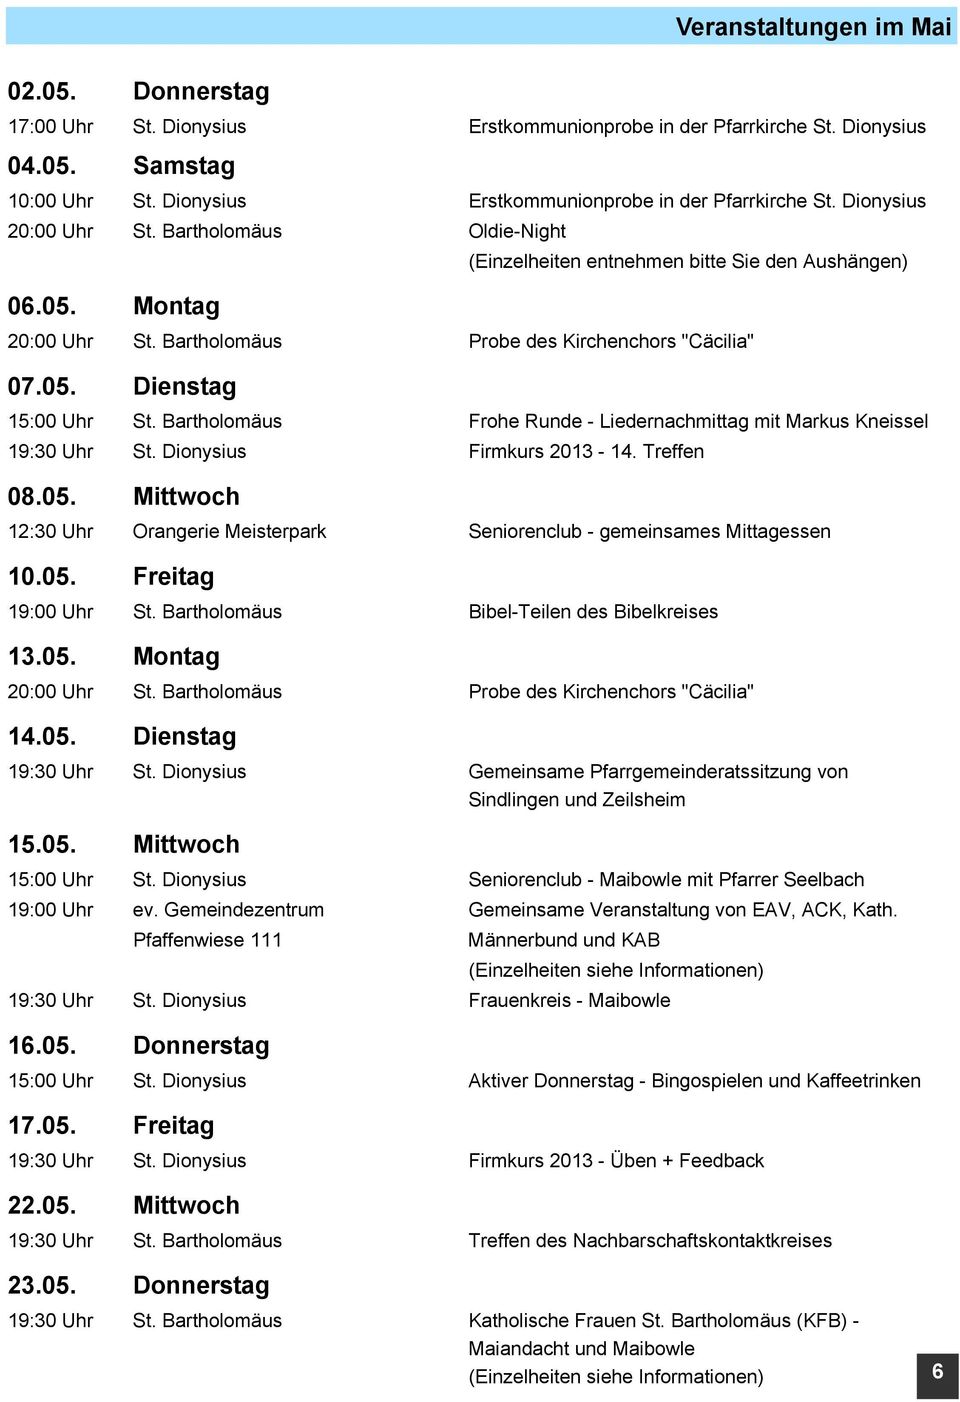 Bartholomäus Frohe Runde - Liedernachmittag mit Markus Kneissel 19:30 Uhr St. Dionysius Firmkurs 2013-14. Treffen 08.05.